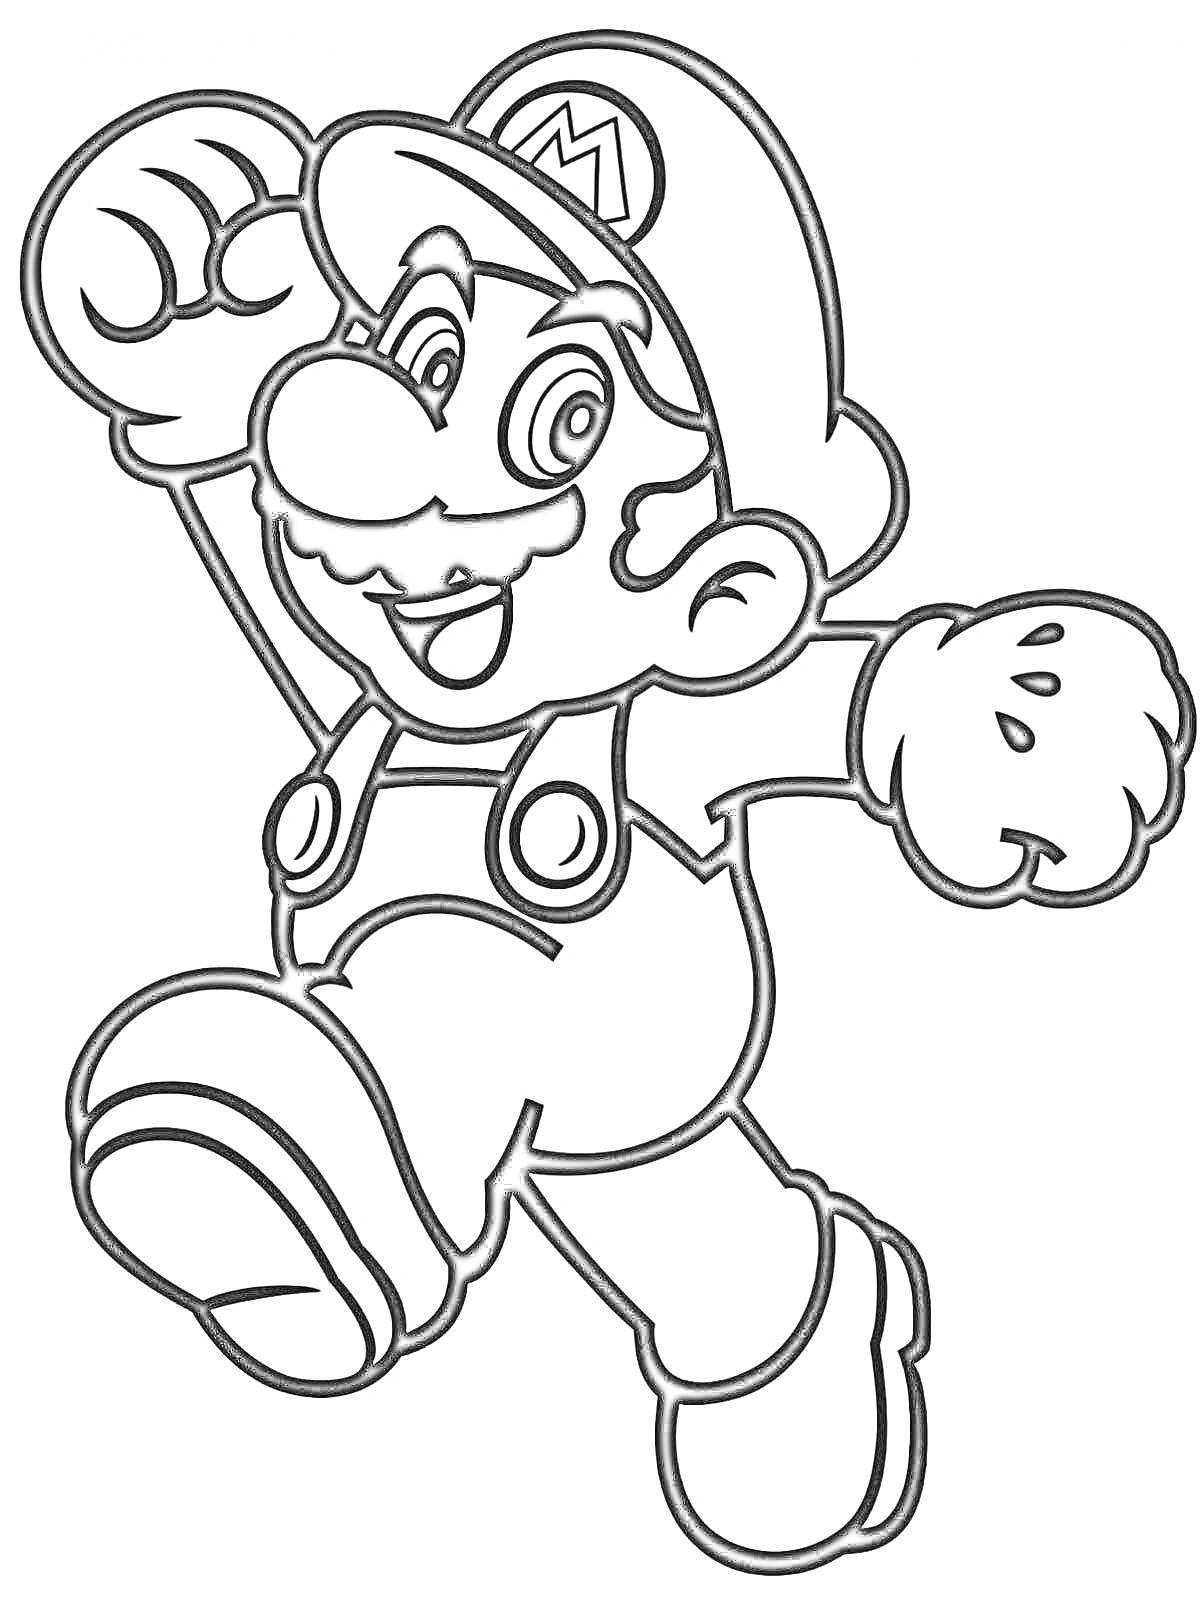 Раскраска Прыгающий Марио с поднятой рукой в кепке и комбинезоне